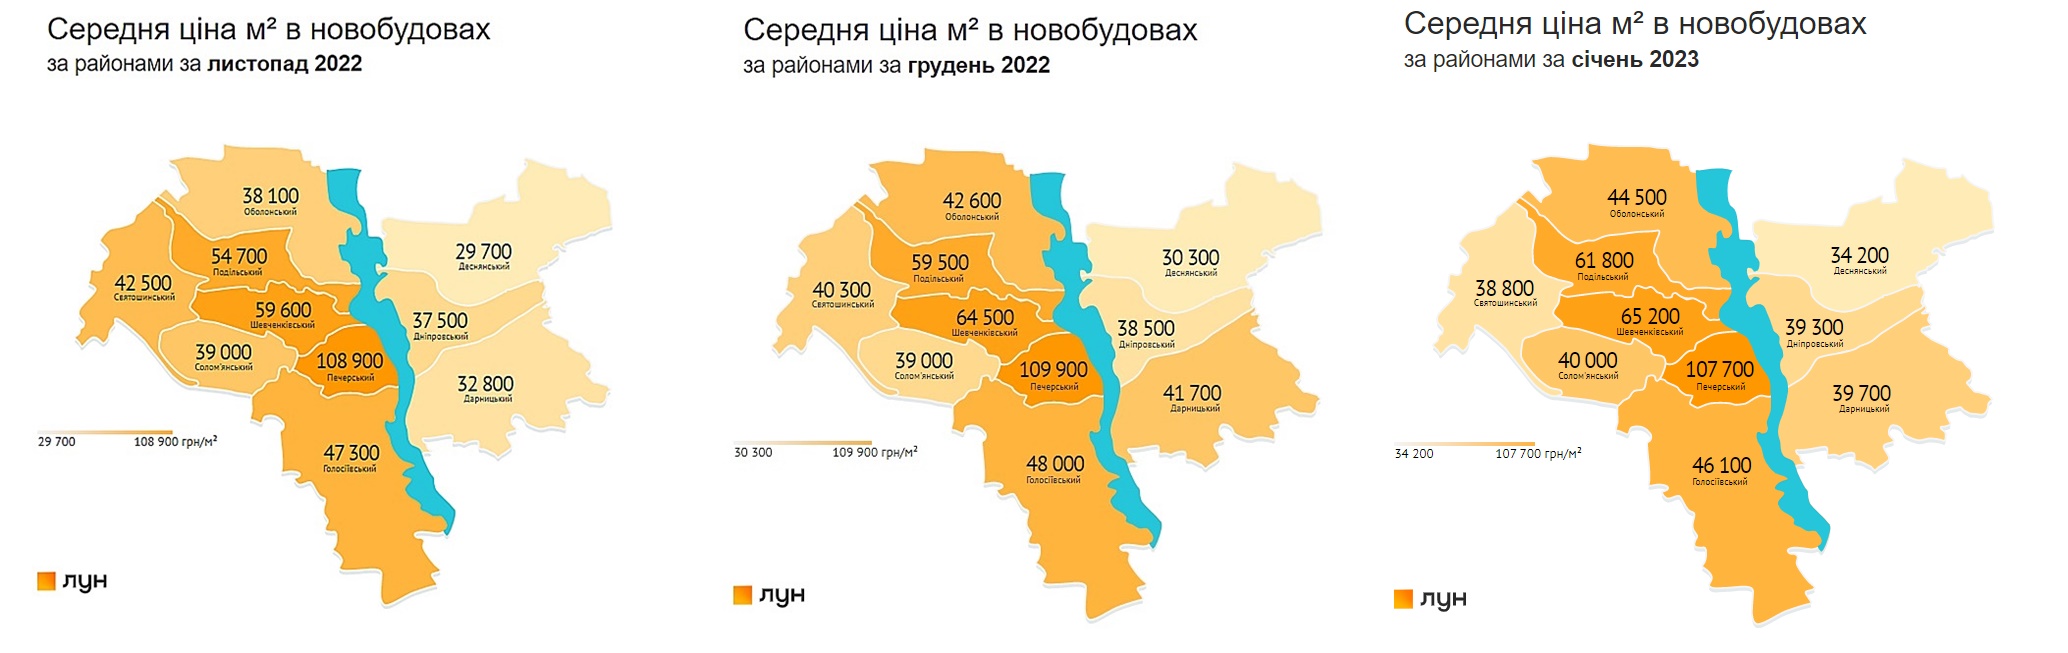 Середні ціни за метр квадратний у новобудовах Києва за районами за листопад 2022 - січень 2023